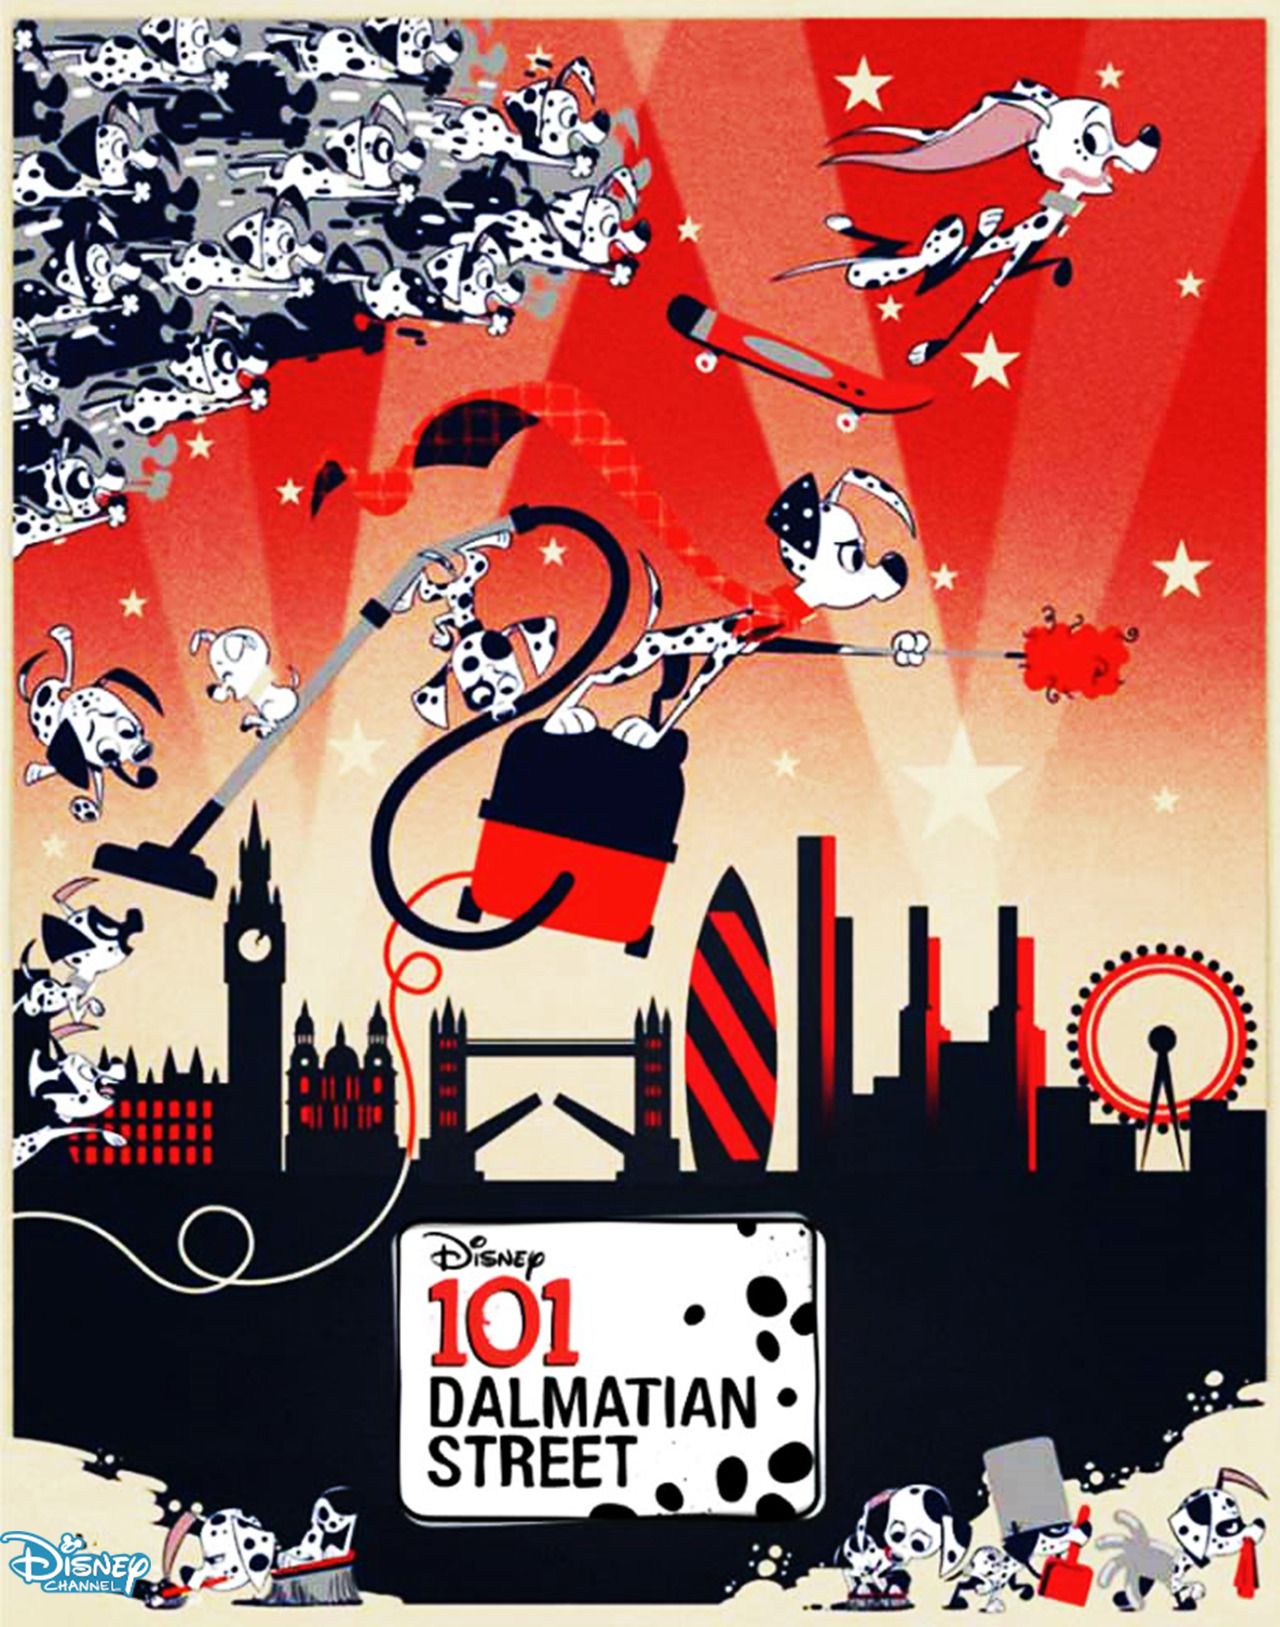 Dalmatian Street Gallery Dalmatian Street